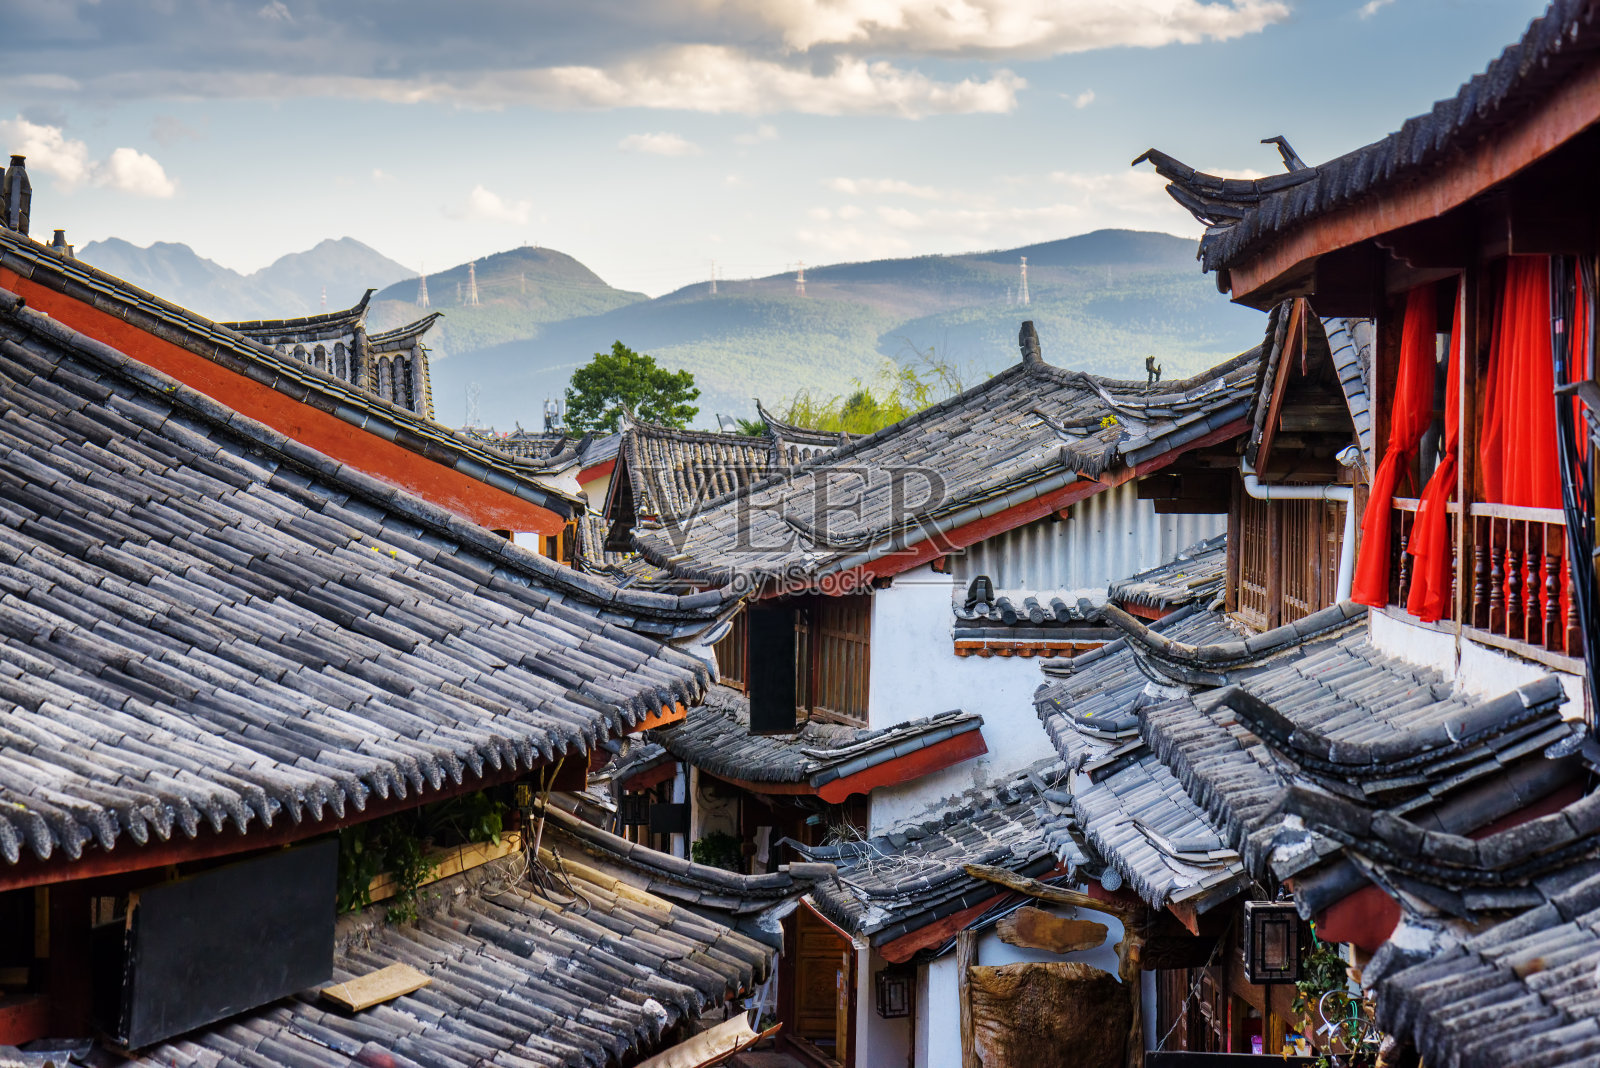 丽江风景秀丽，是中国传统的瓦房屋顶照片摄影图片